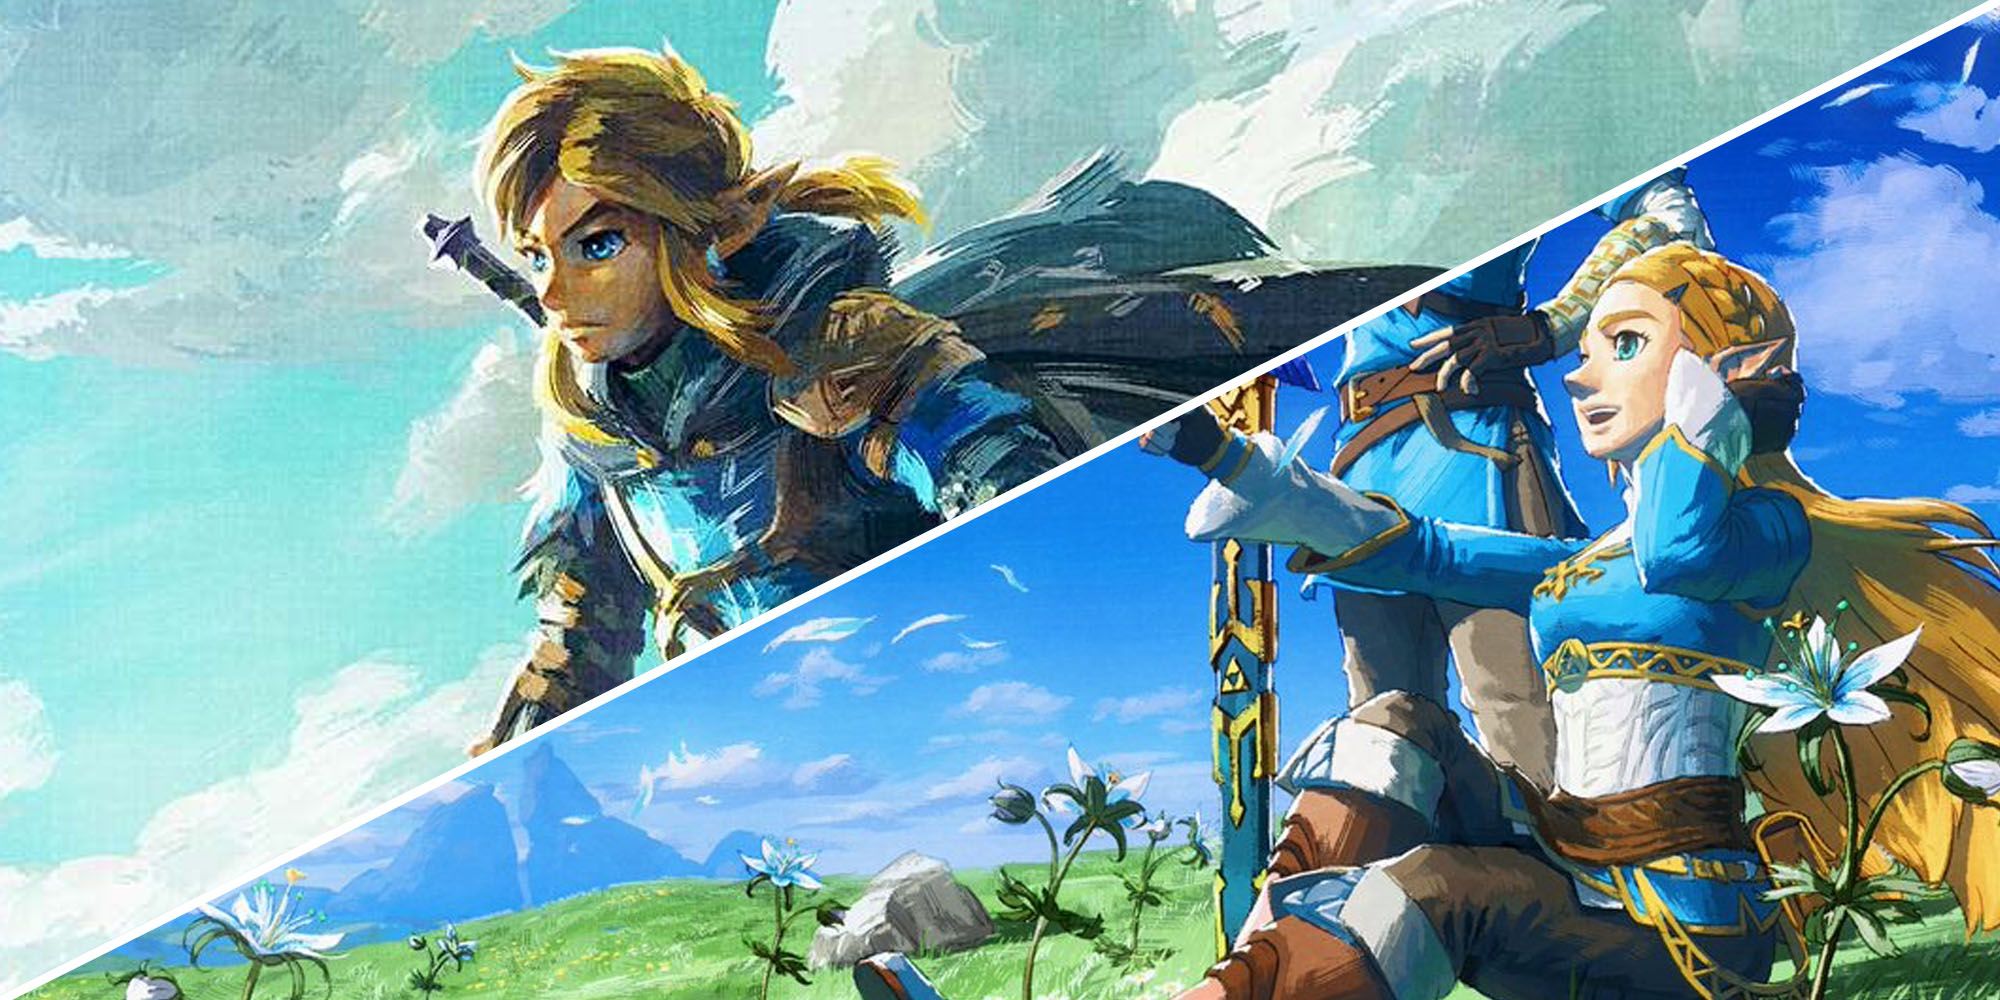 The Legend of Zelda: Tears of the Kingdom - Sequela de Zelda